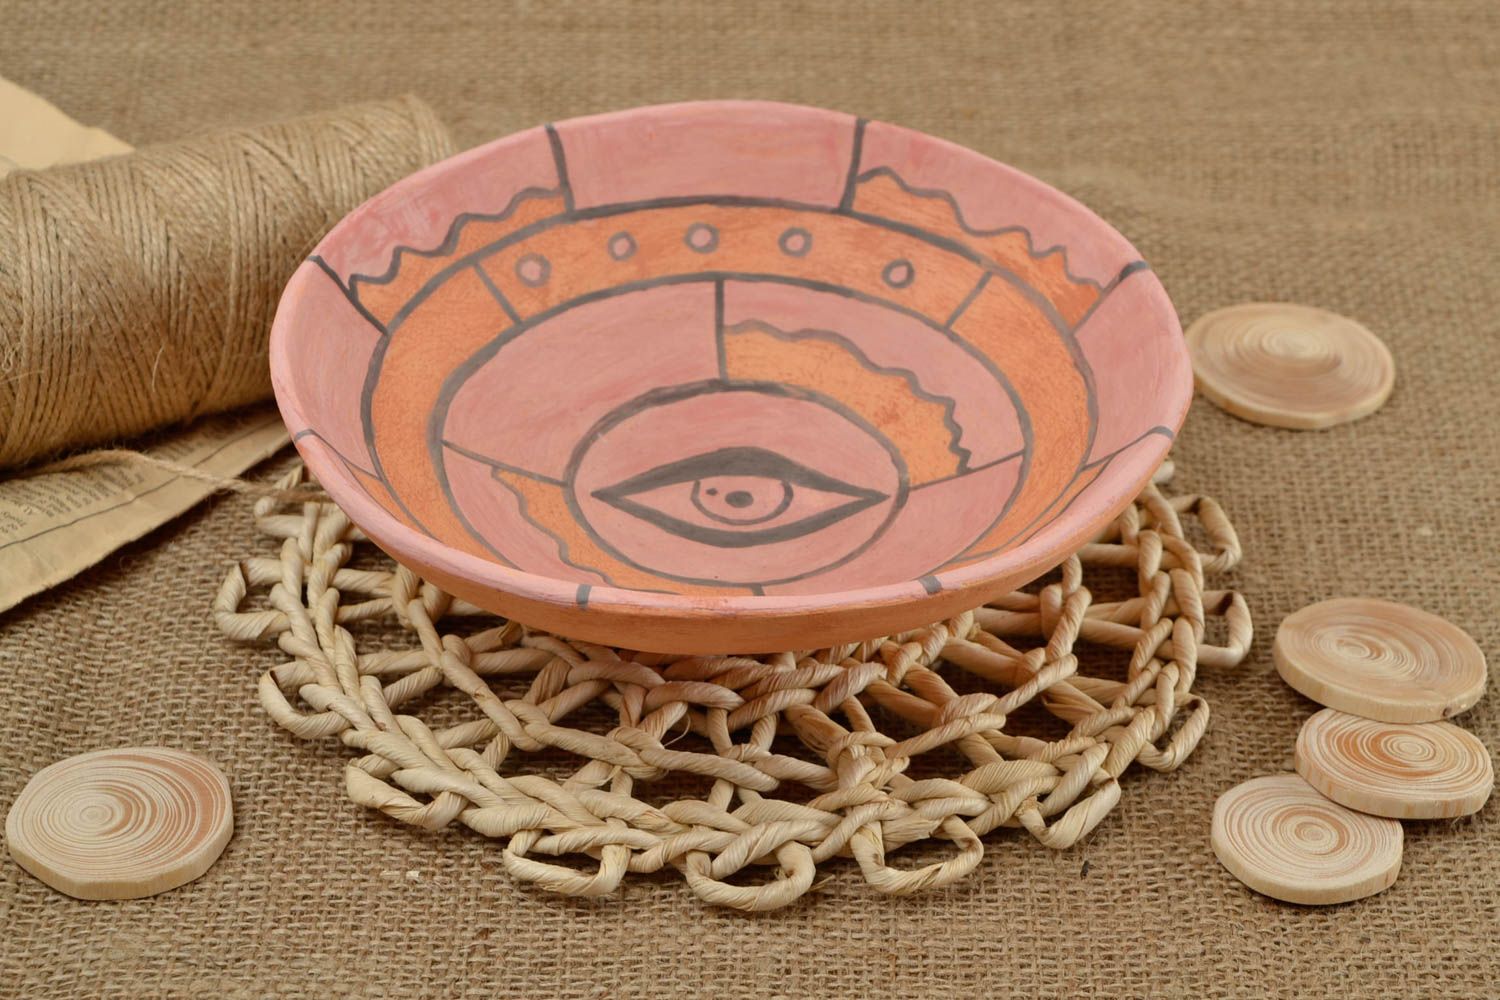 Handmade ceramic plate ceramic bowl stoneware dinnerware housewarming gifts photo 1